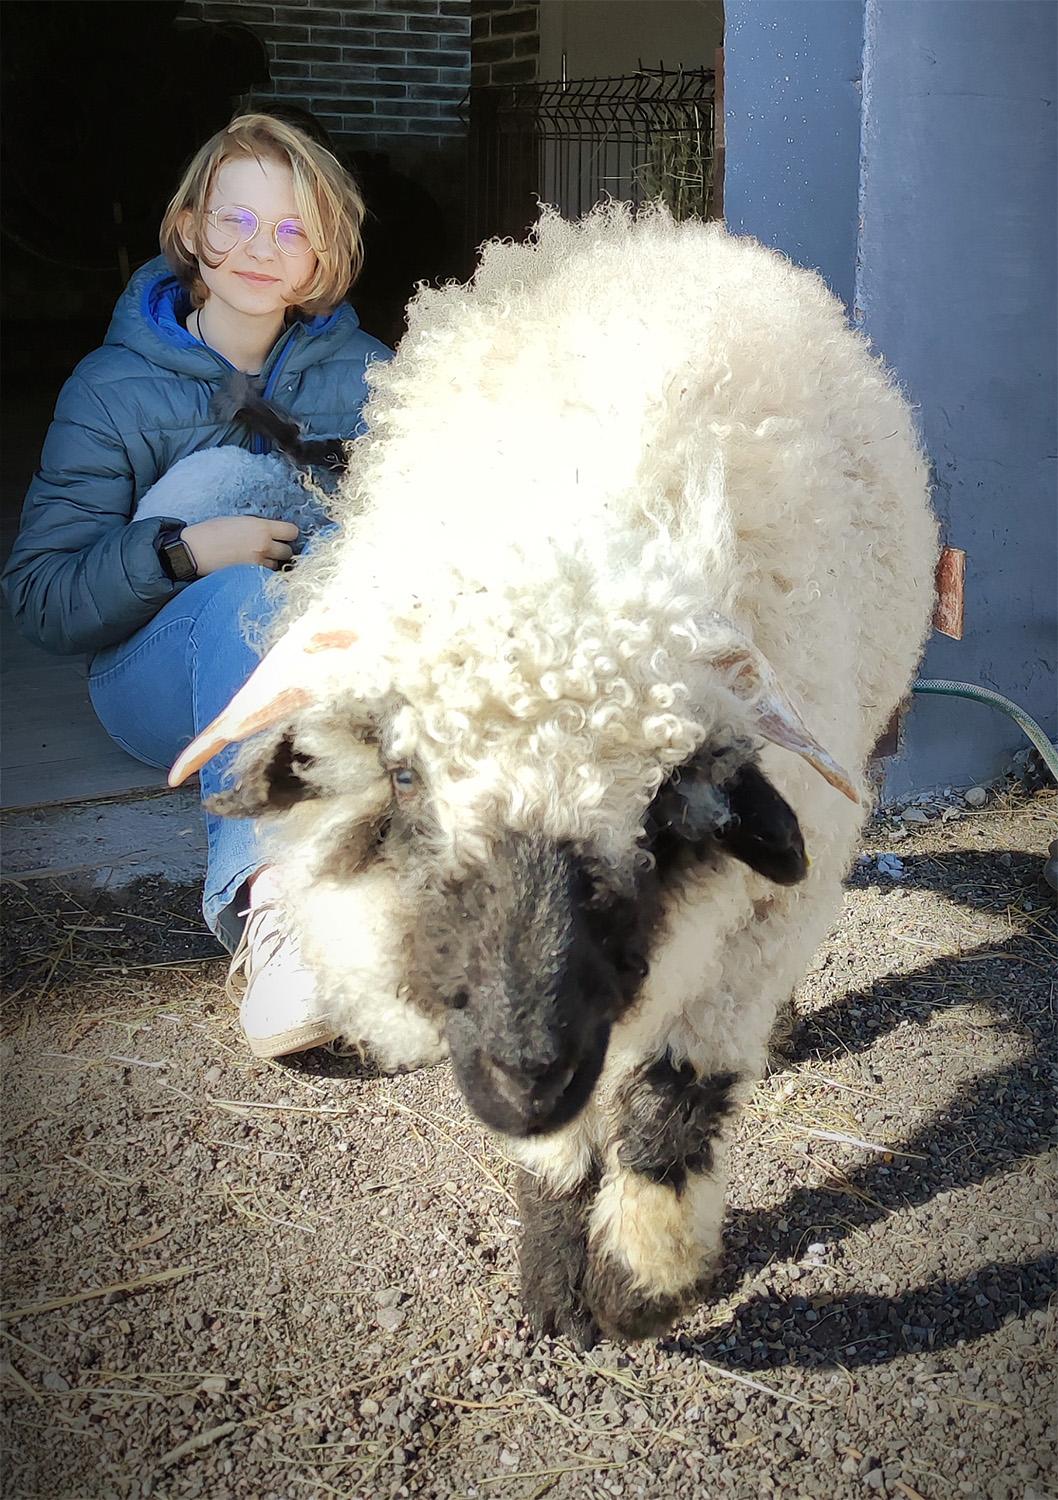 Vilkai papjovė išskirtinės veislės dresuotą aviną / Giedrės ir Gedimino Pupšių šeimos archyvo nuotr. Vilko grobiu tapo šeimos verslo įmonės „Litwool“ numylėtinis – retos veislės dresuotas avinas.